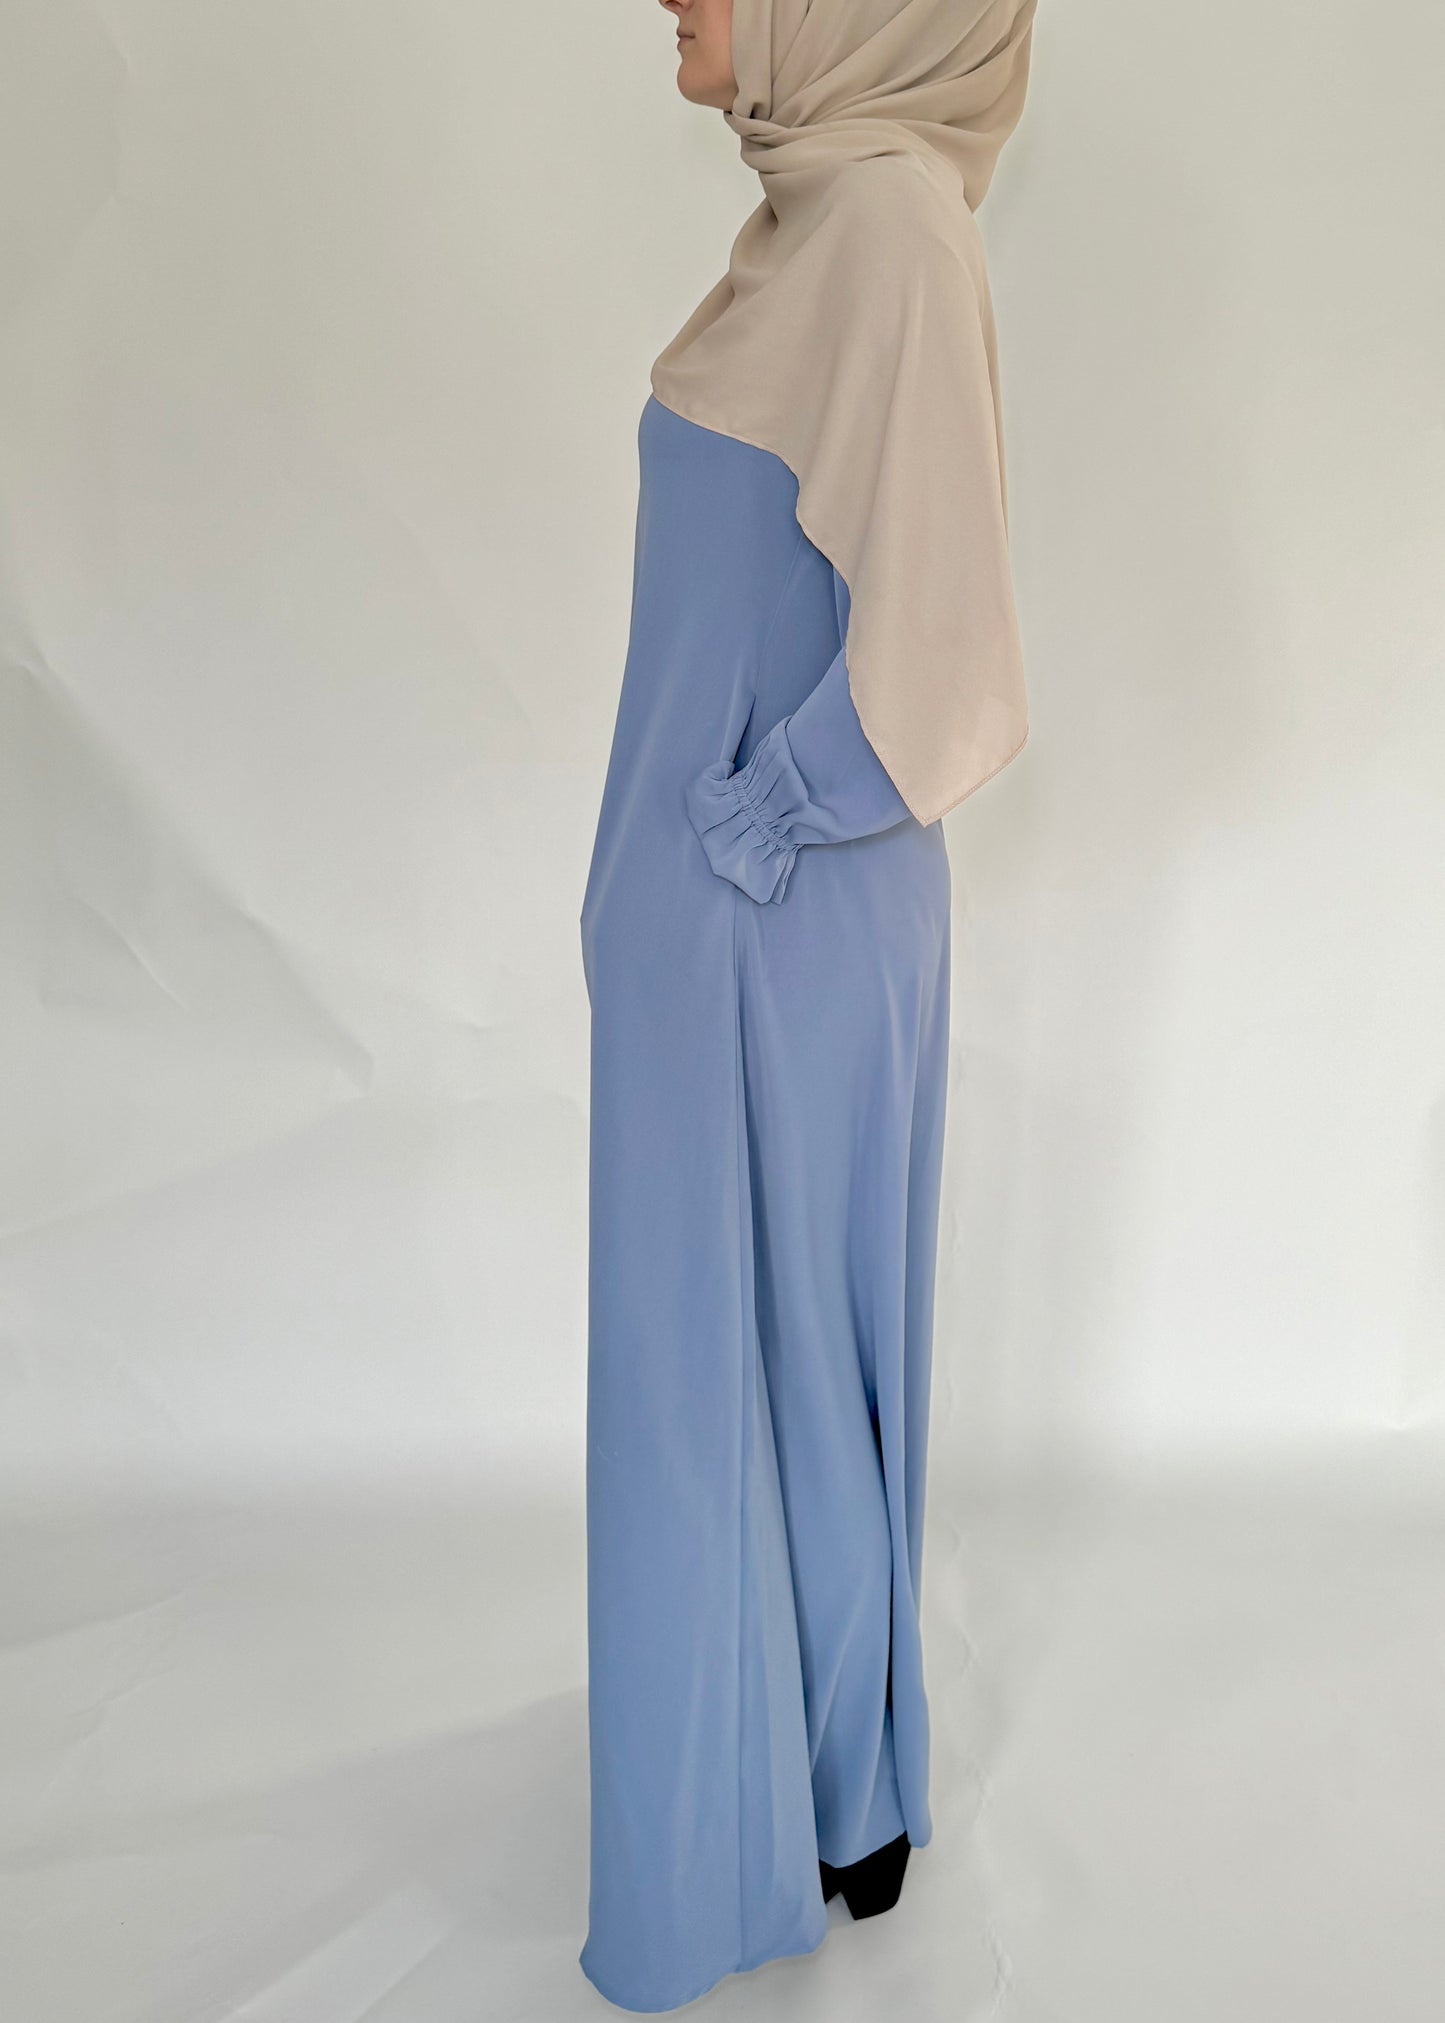 Zip Up Simple Poet Sleeve Abaya - Dusty Blue